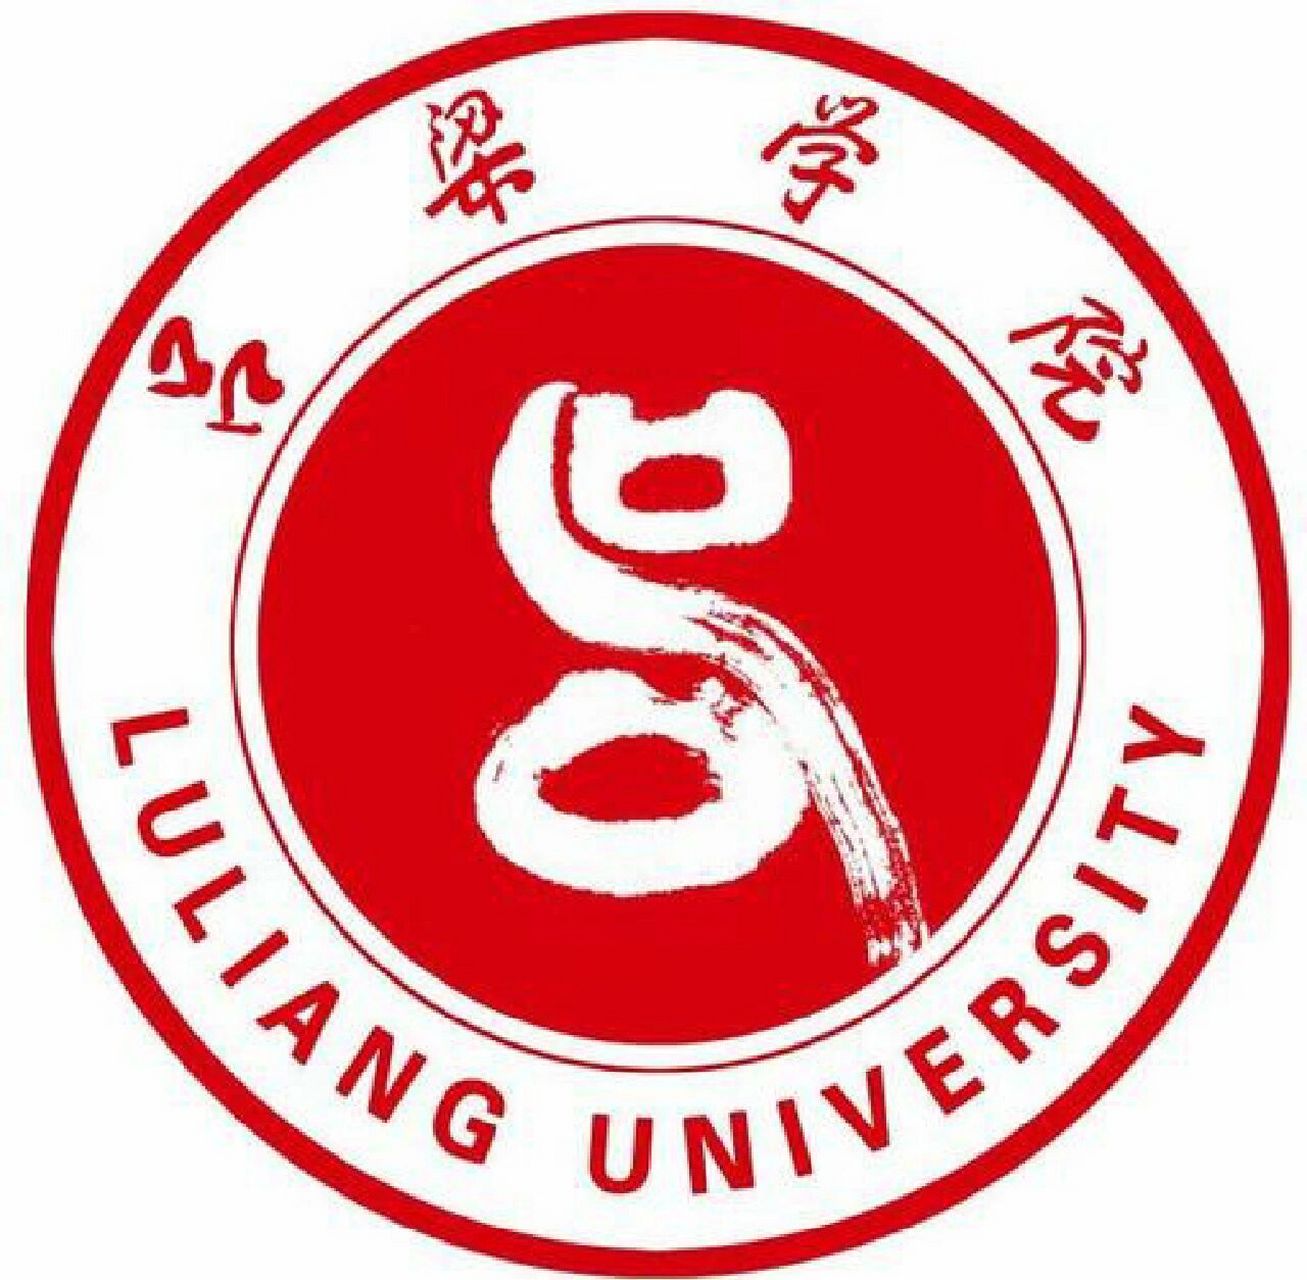 吕梁学院(lyuliang university),坐落于山西省吕梁市,学校是山西省